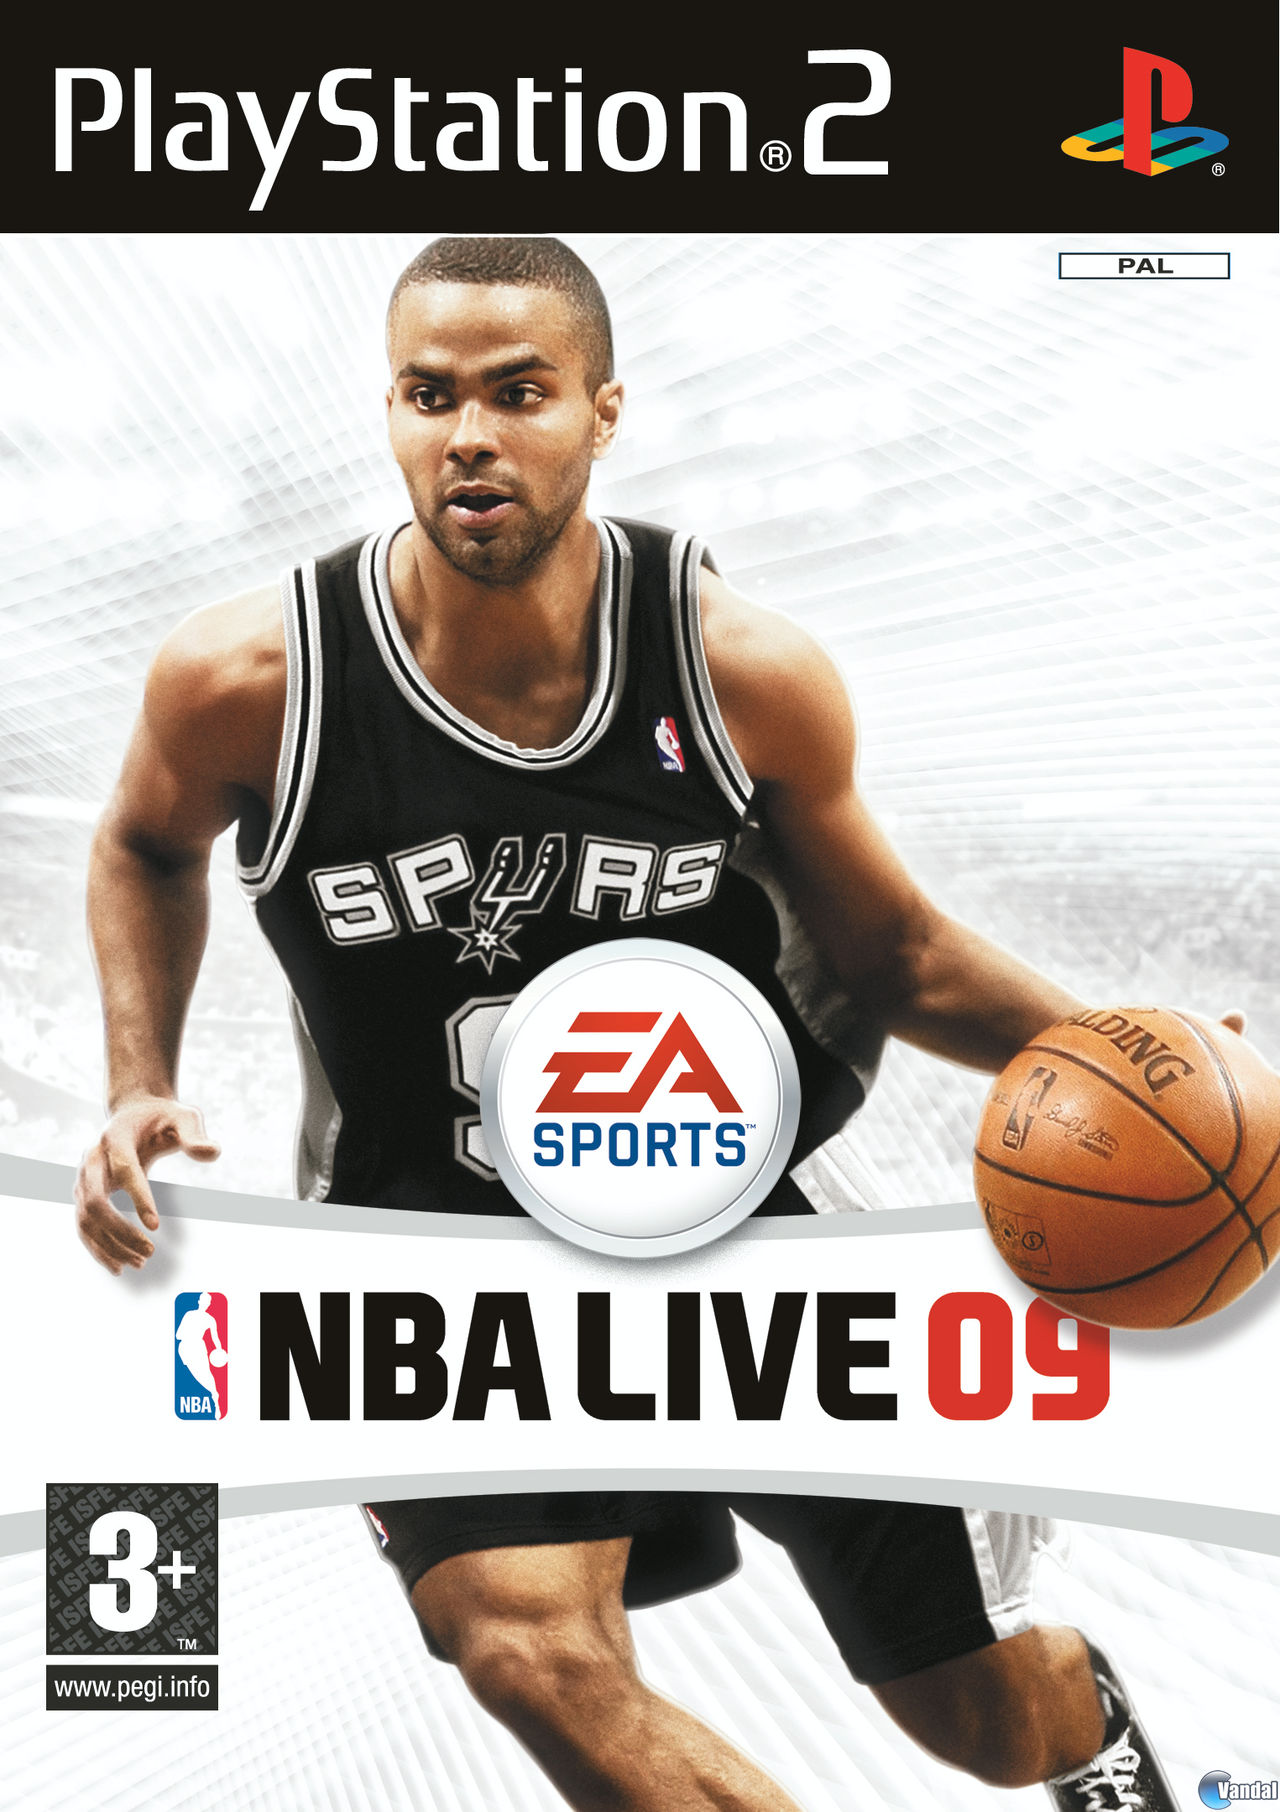 jaquette du jeu vidéo NBA Live 09 All-Play